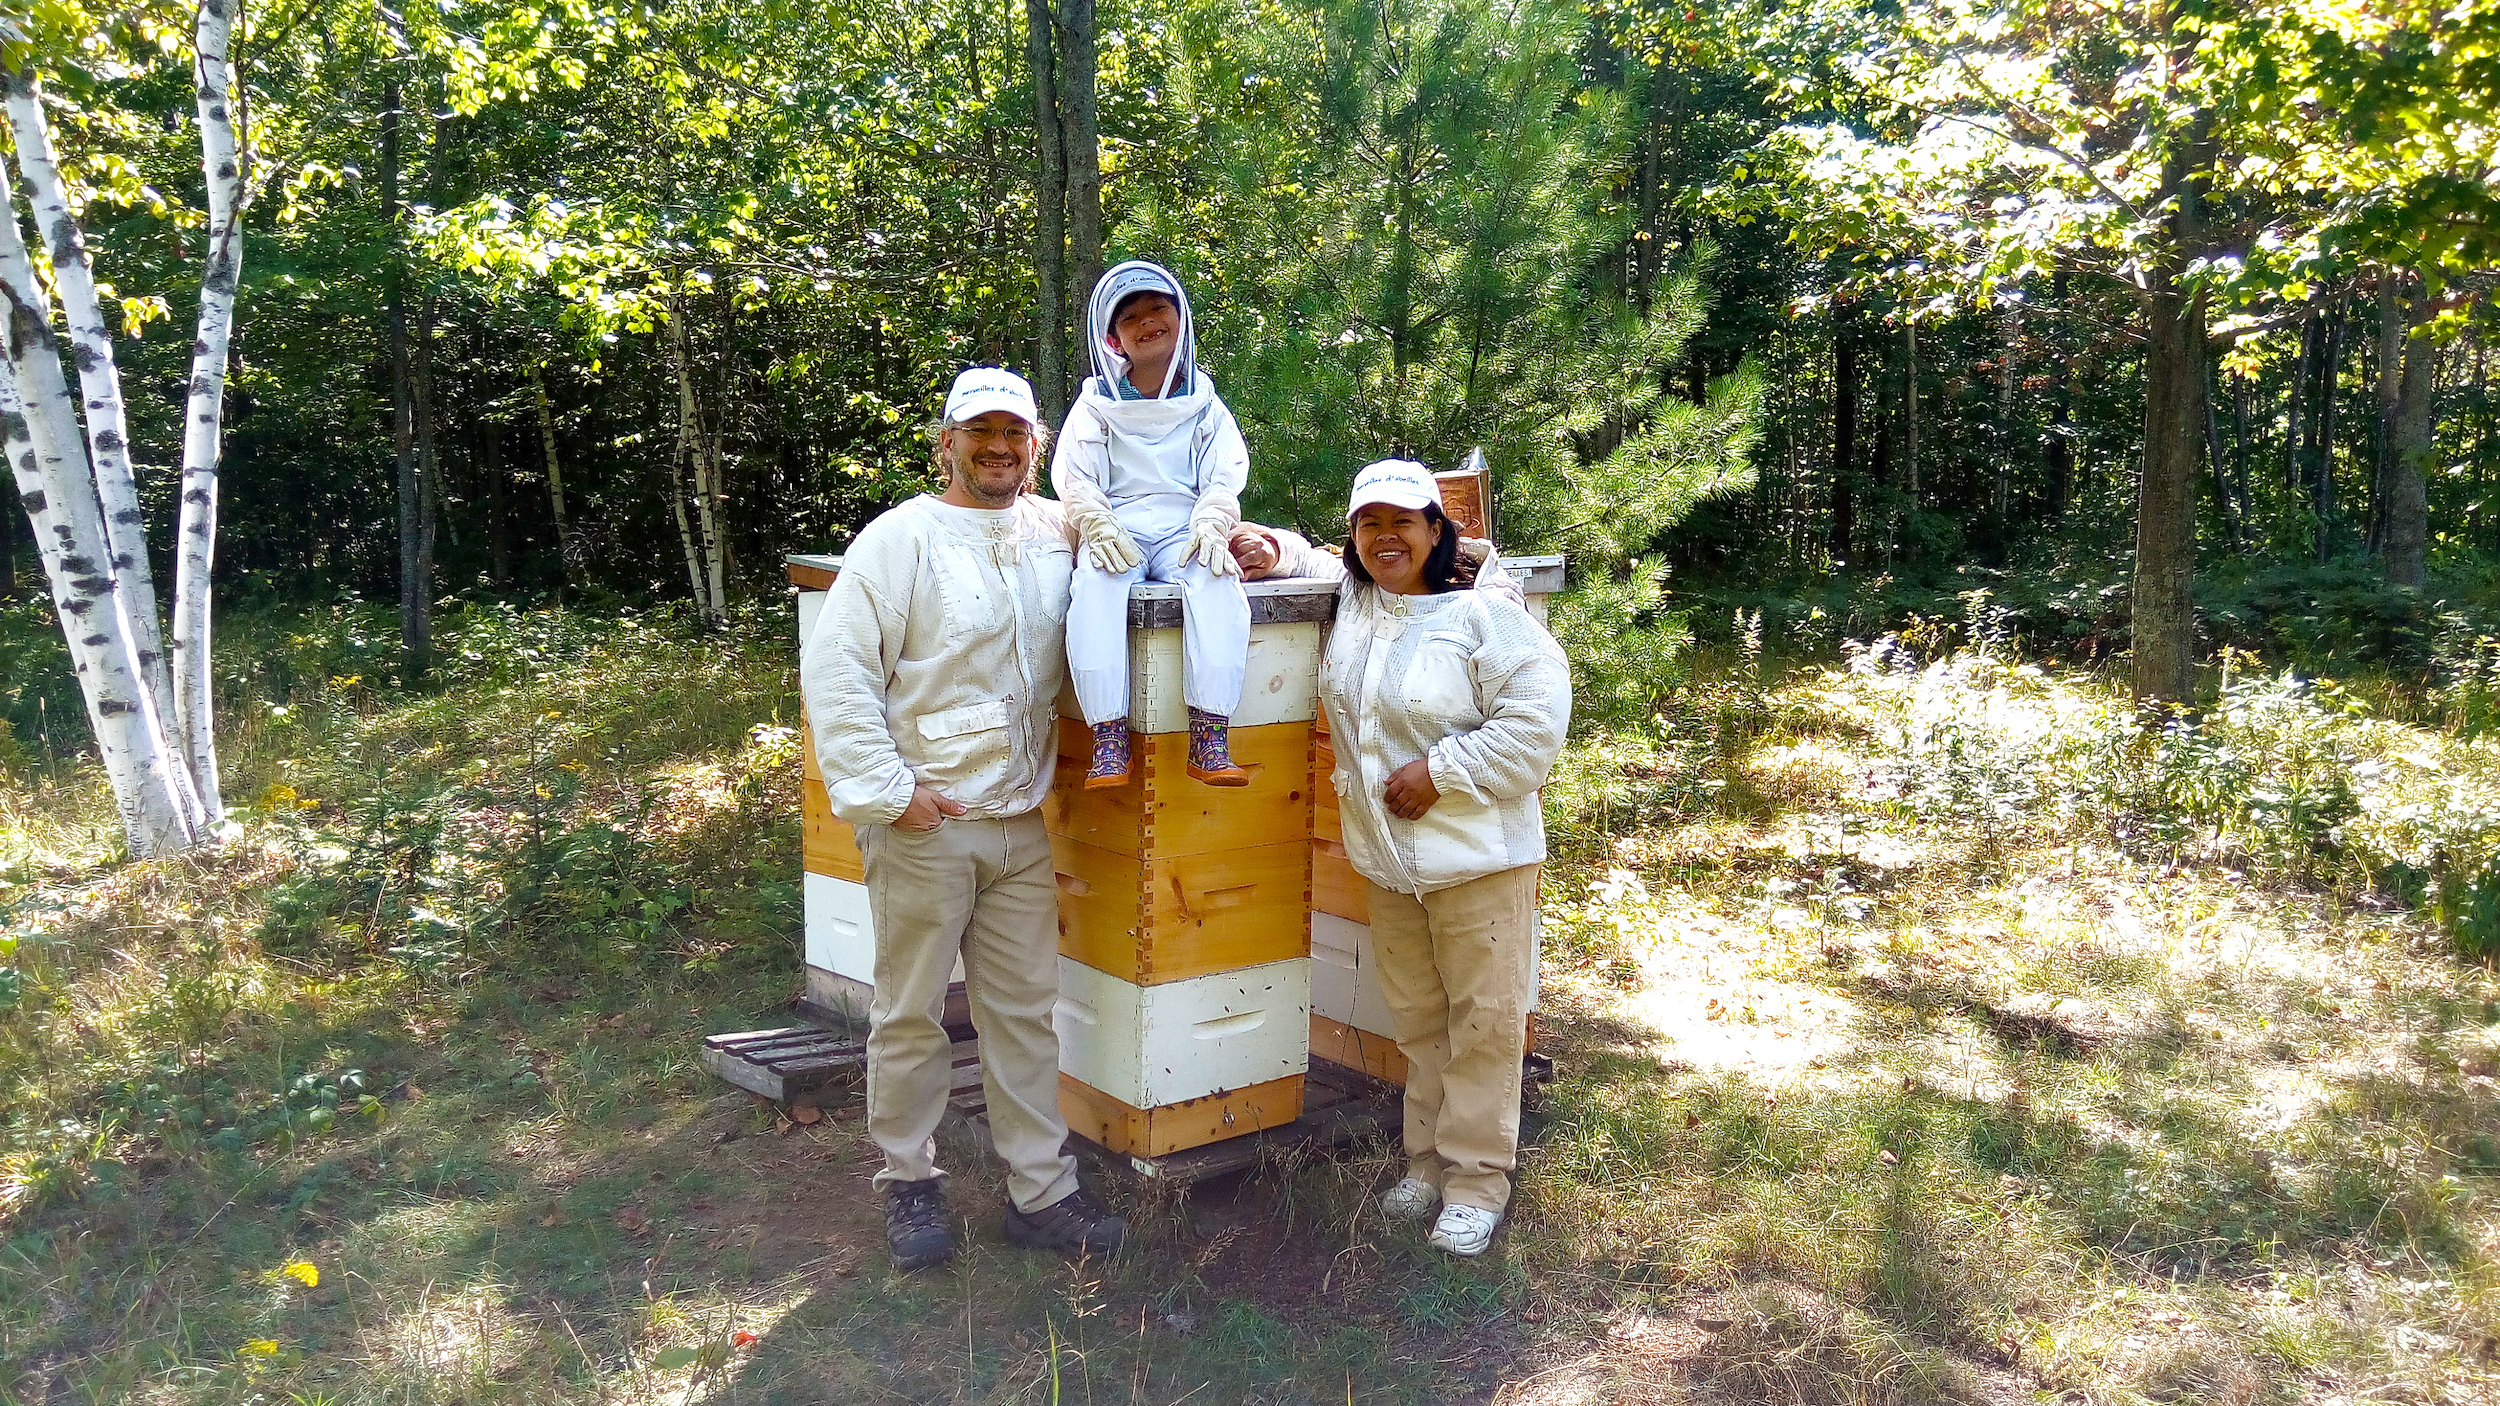 Merveilles d'abeilles, Apiculteurs & acériculteurs